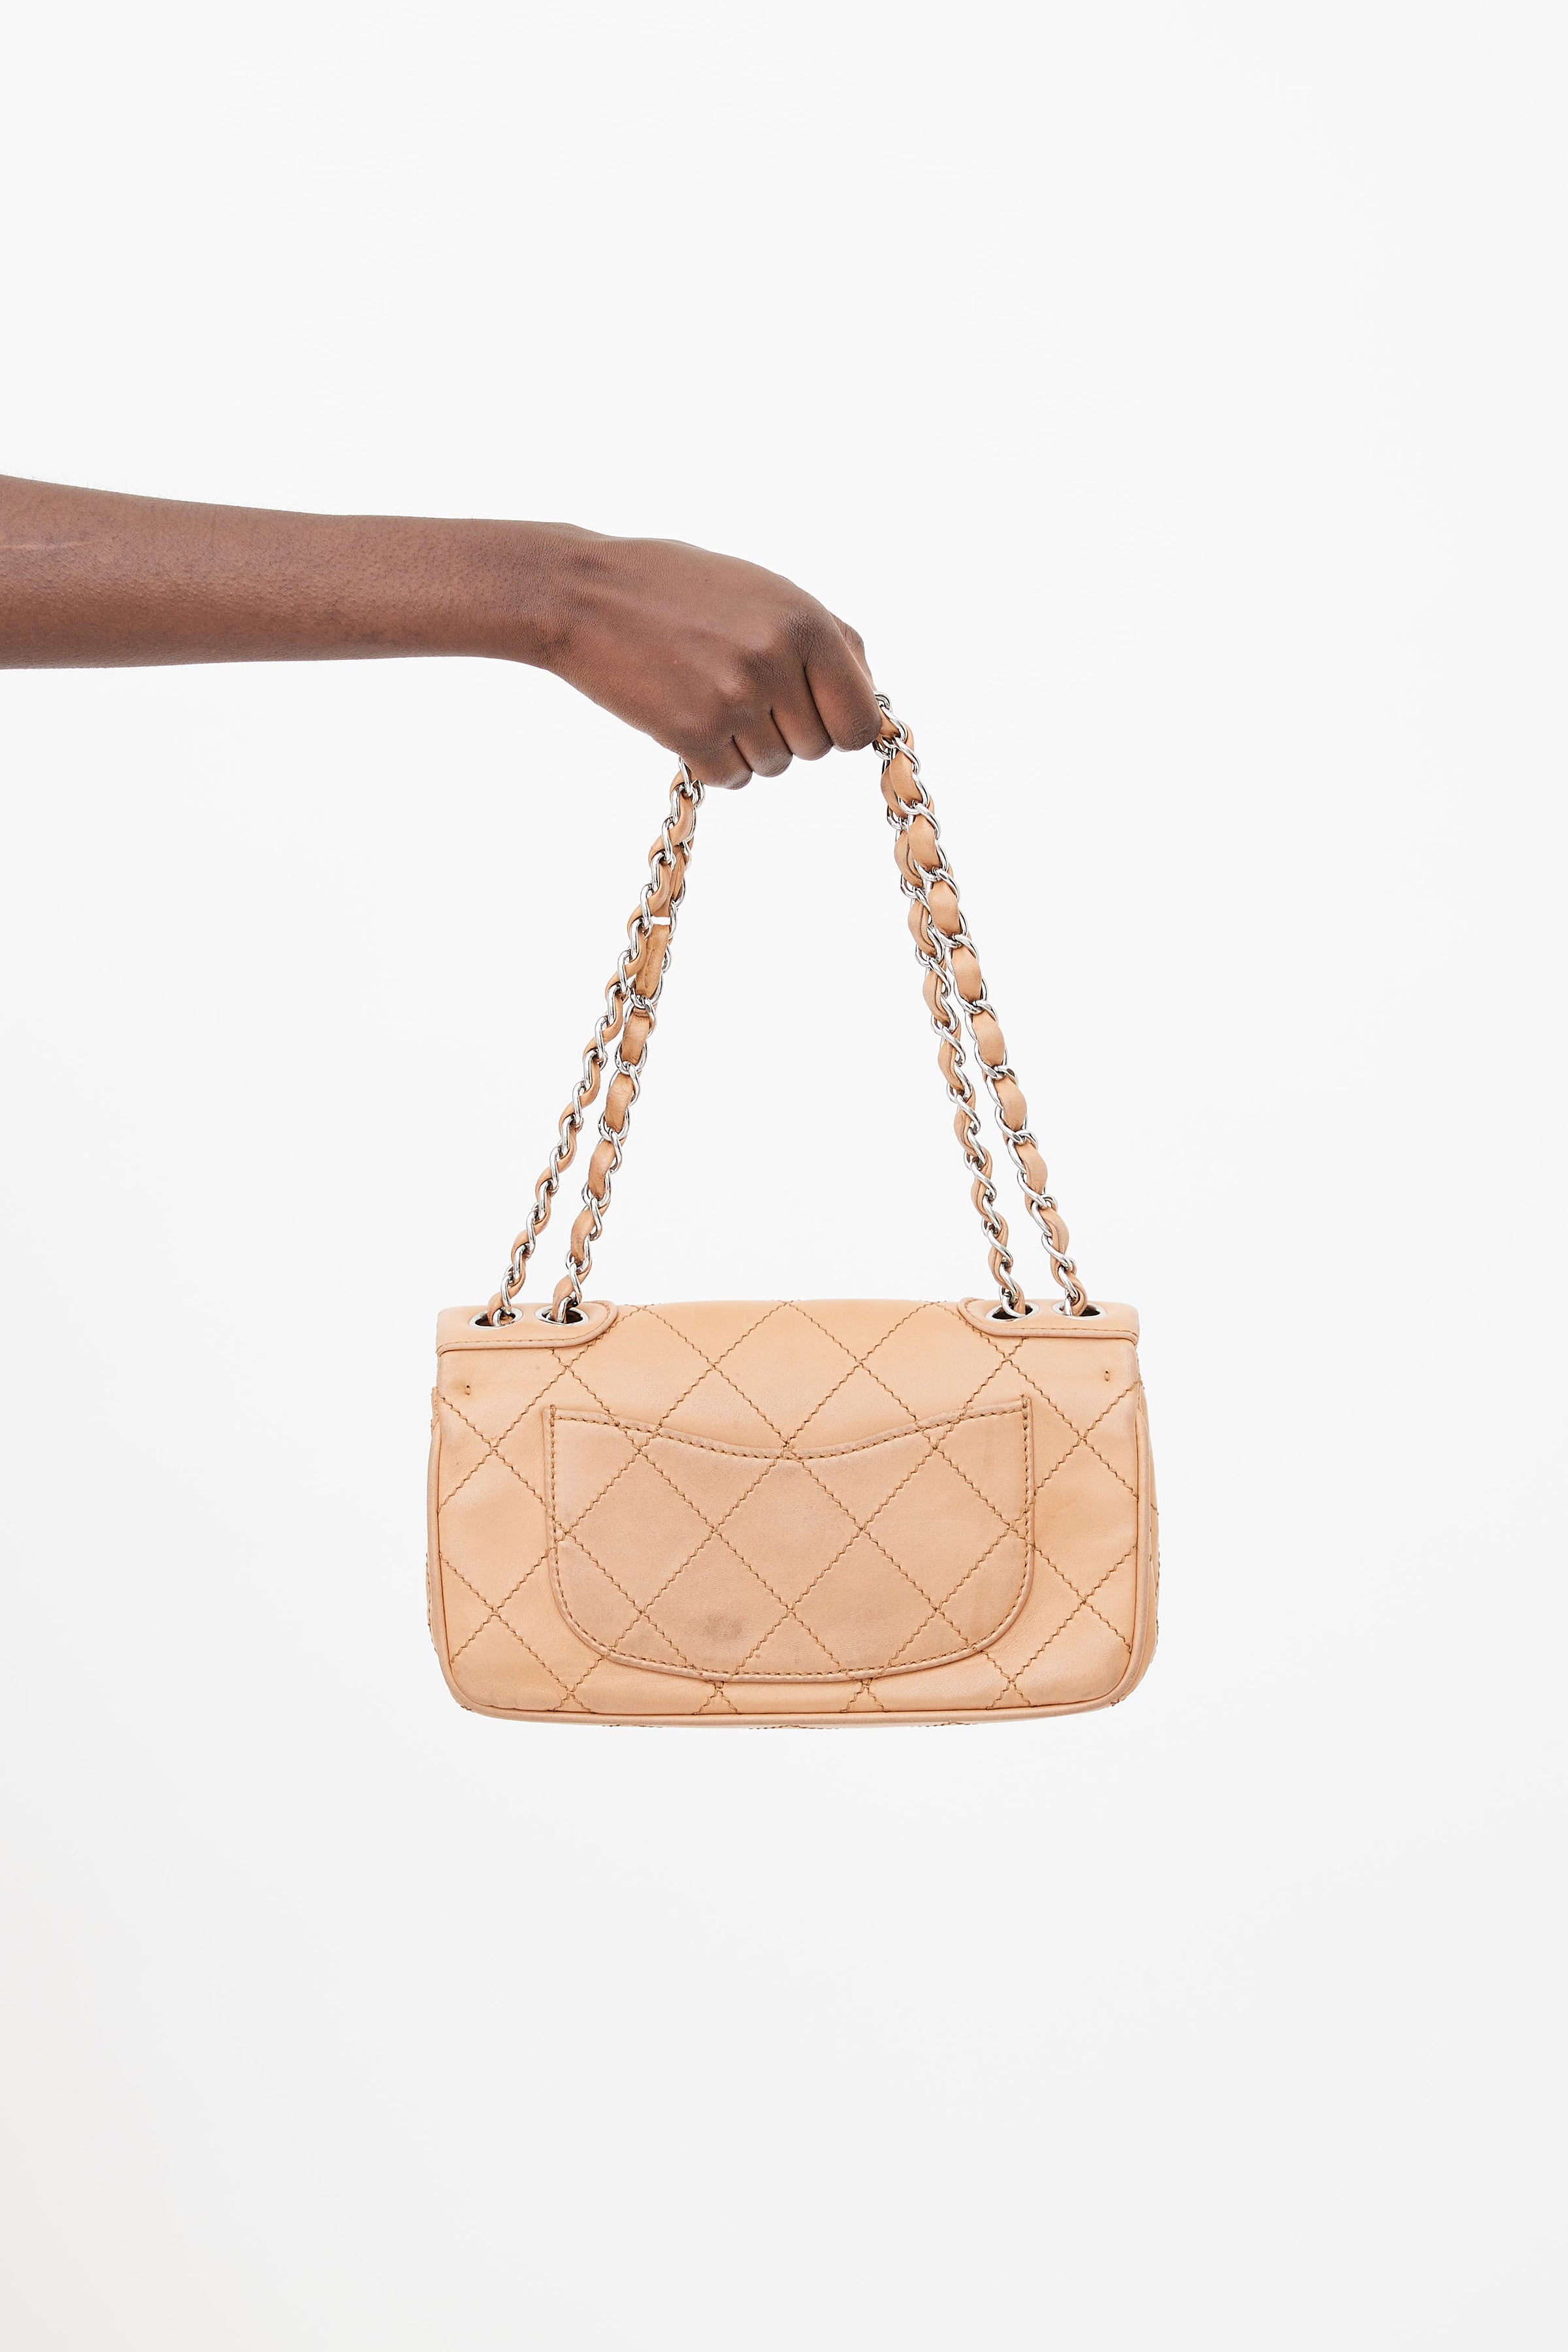 Chanel Shopping Shoulder bag 372493